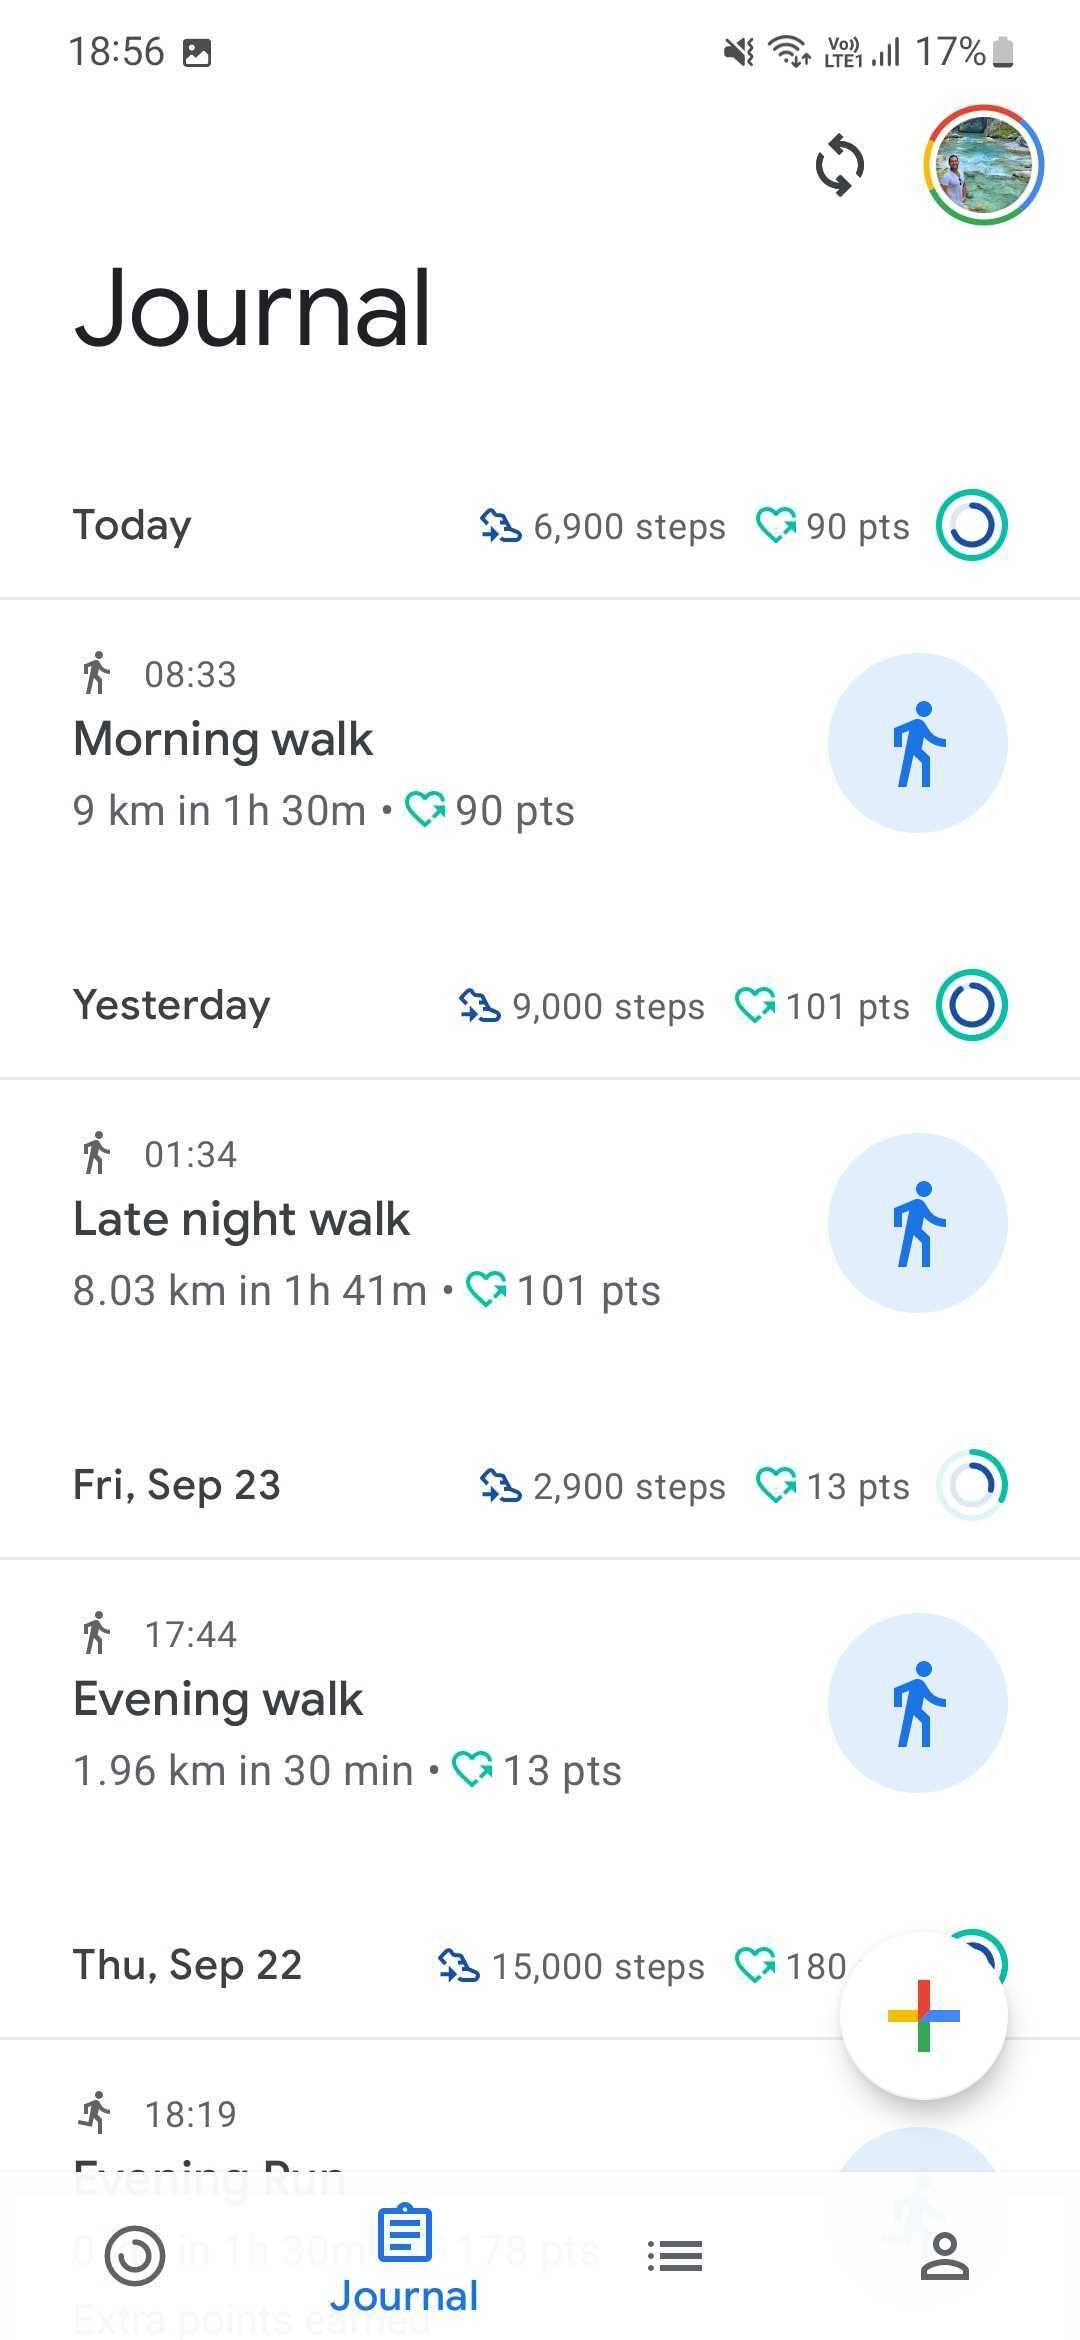 Captura de tela do app Google Fit mostrando o diário de atividades com treinos e exercícios anteriores